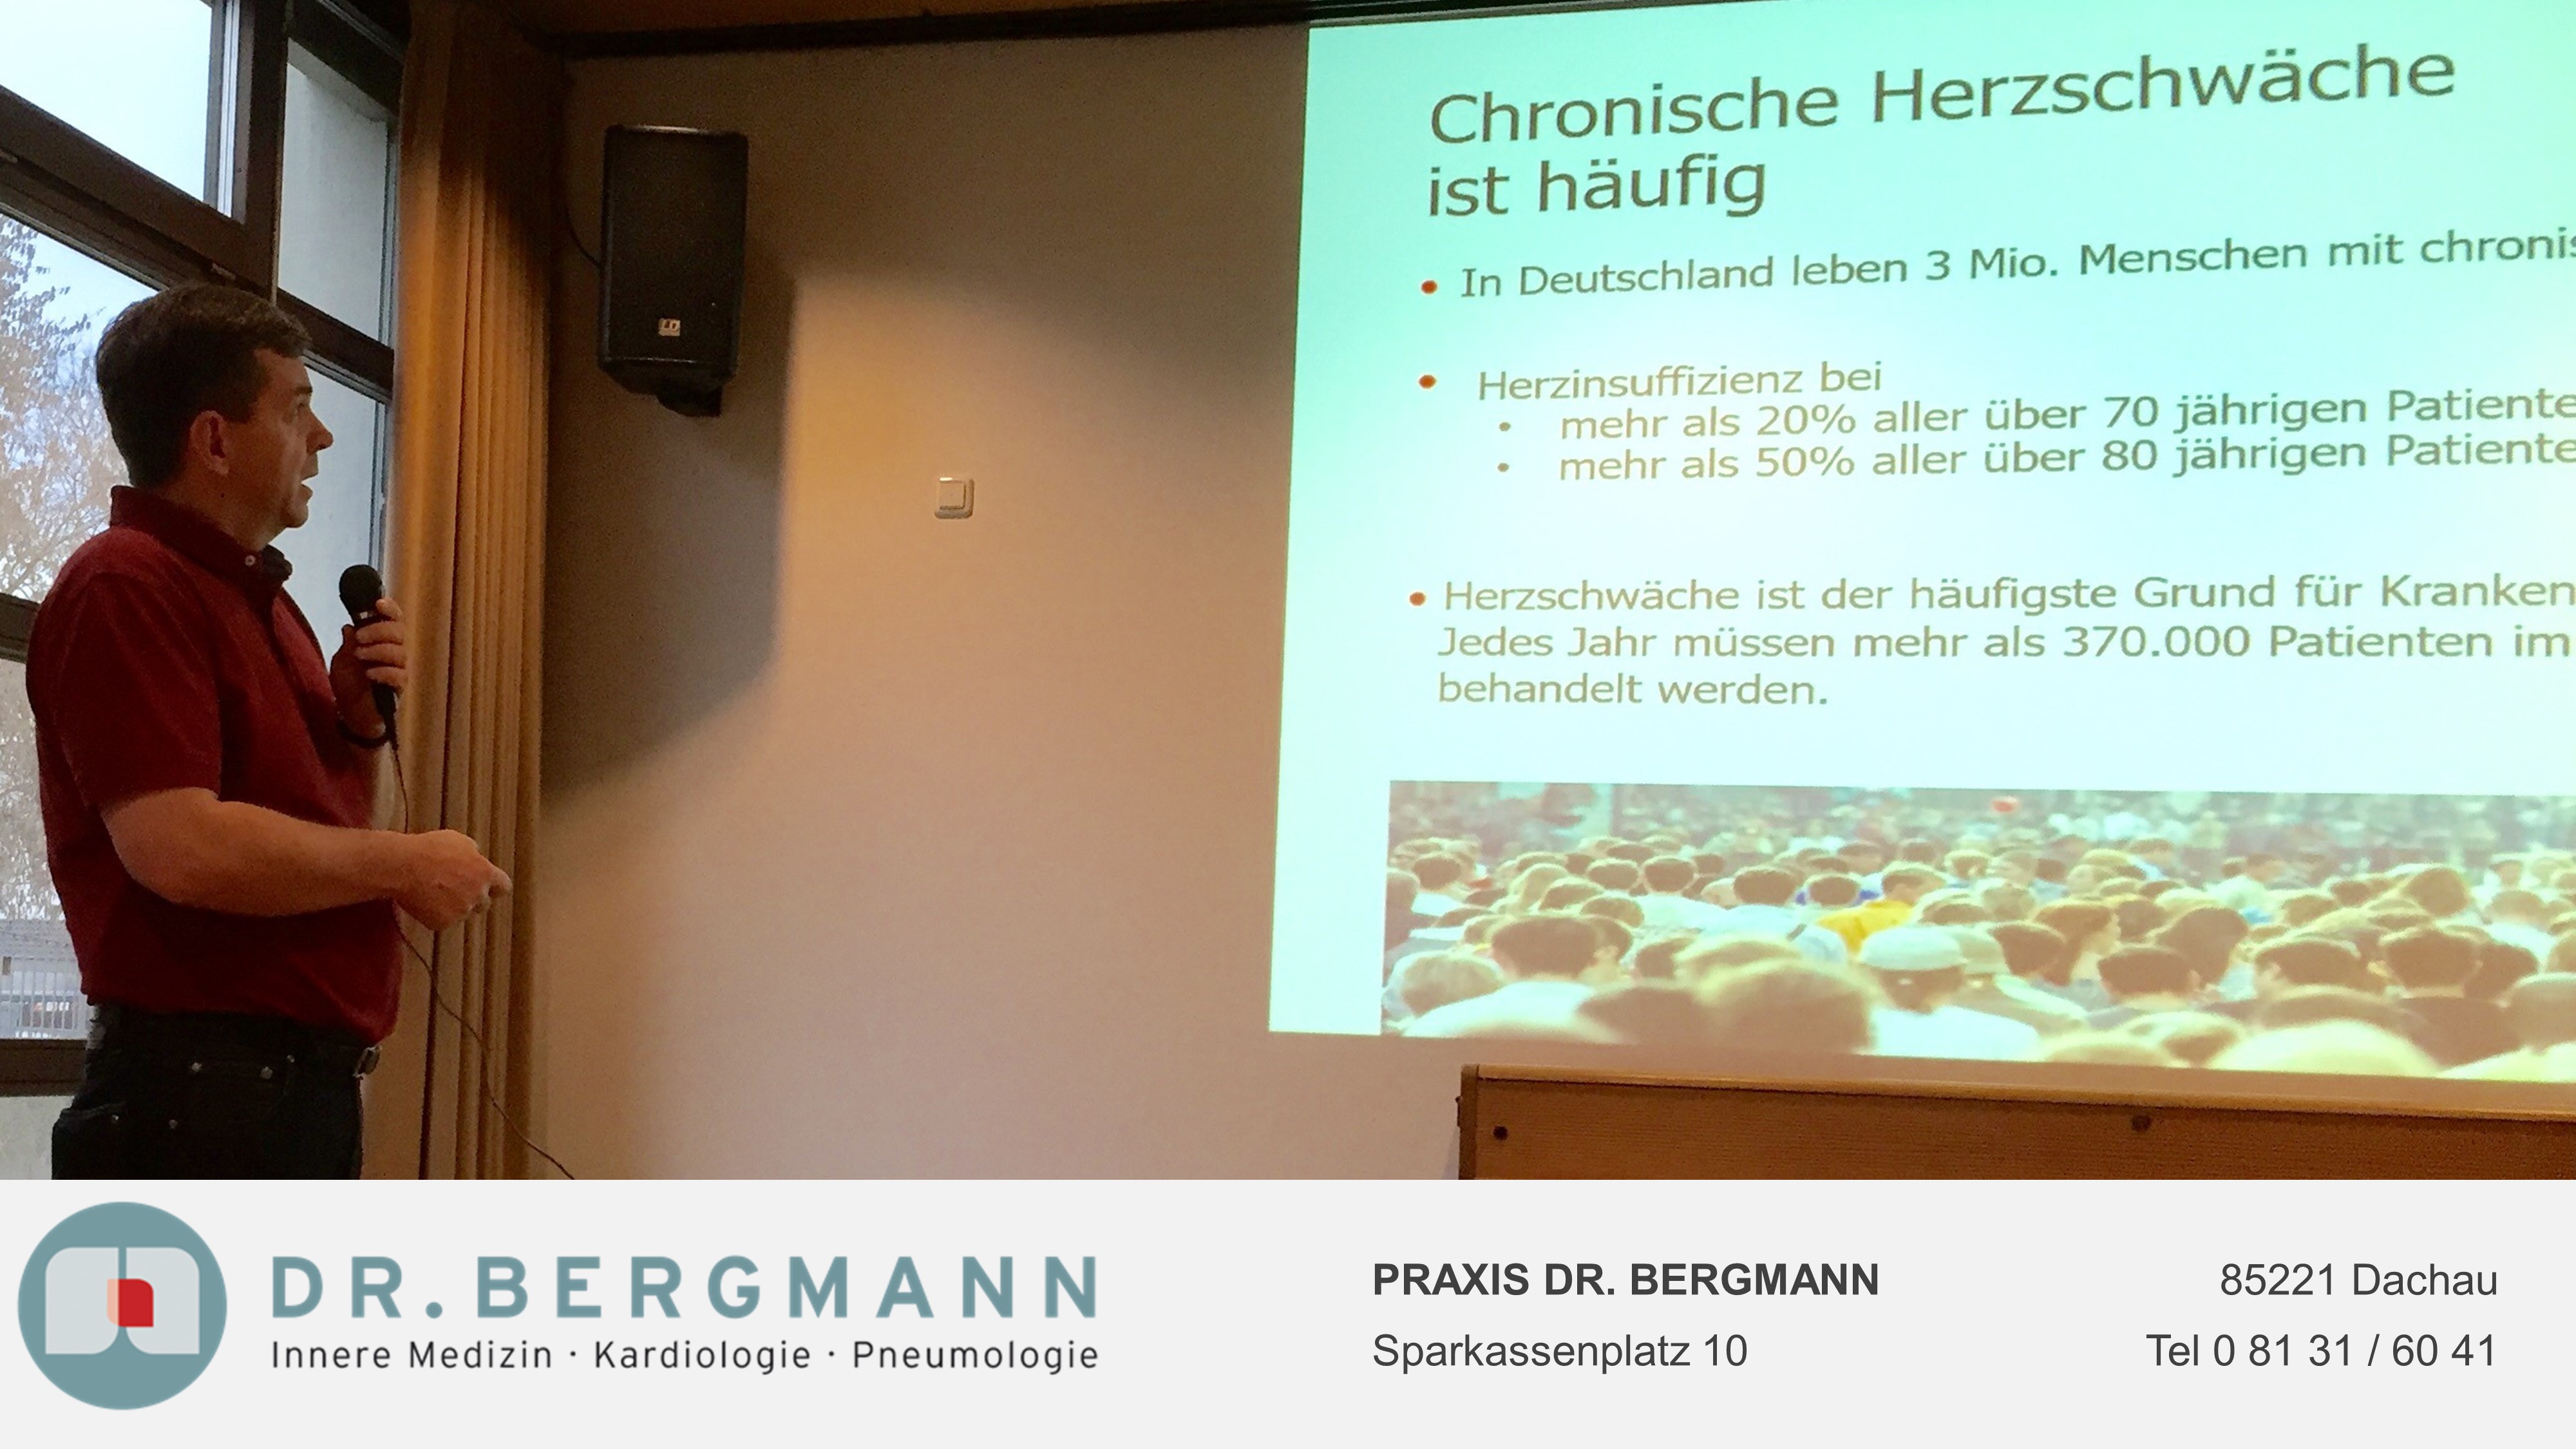 Vortrag - Das schwache Herz | PRAXIS DR. BERGMANN | Dachau